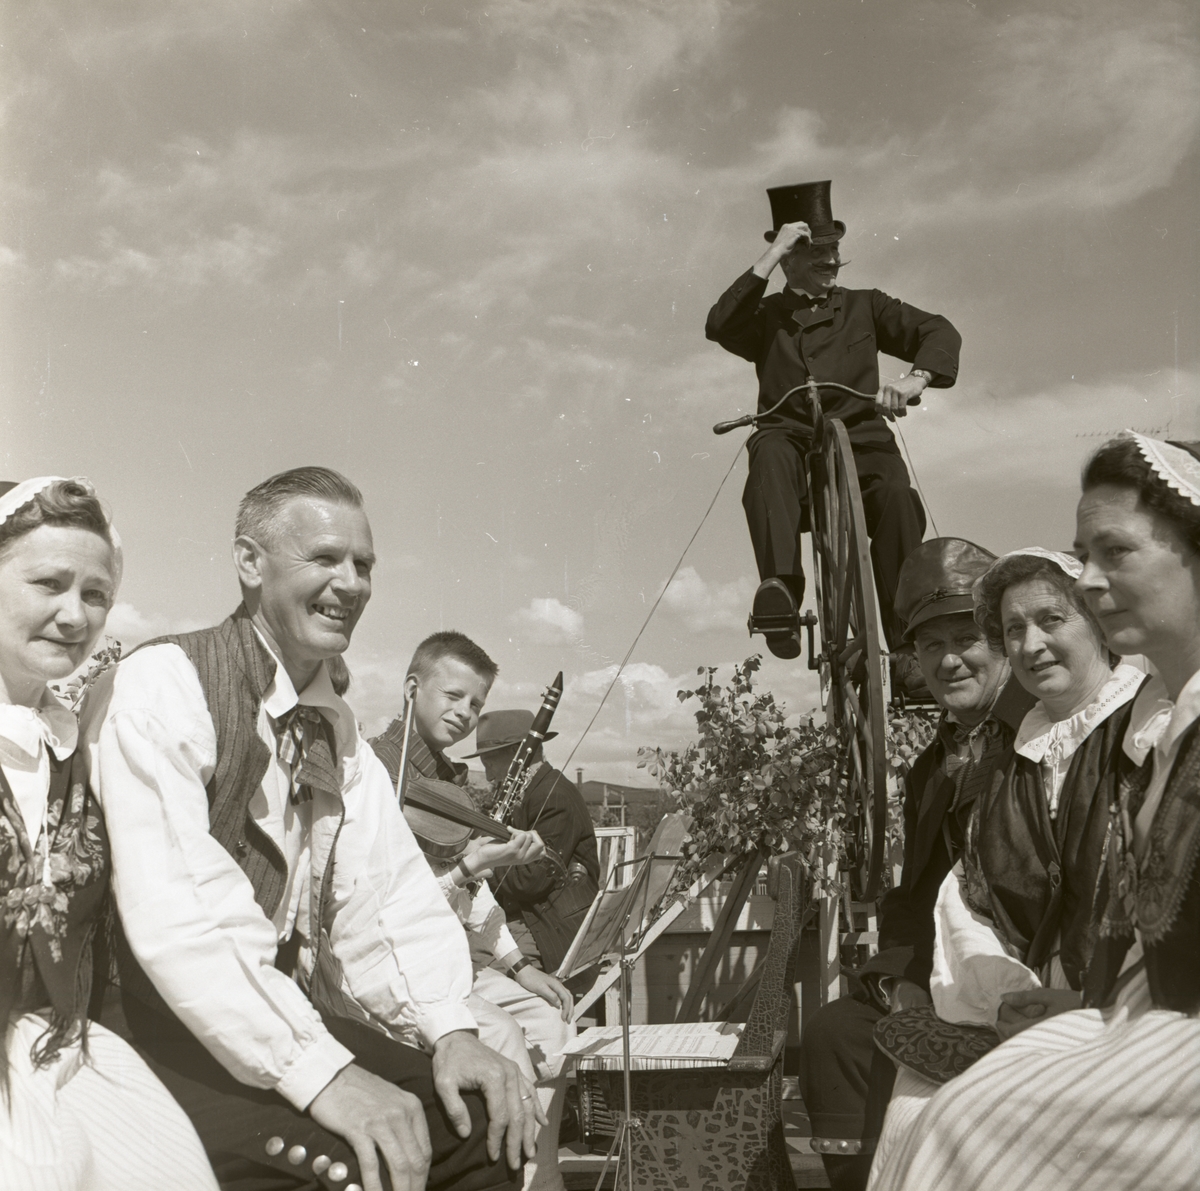 Rengsjö hembygdsförening medverkar vid Bollnäs karnevalen. En man på höghjuling samt människor iförda folkdräkter, 7 augusti 1962.